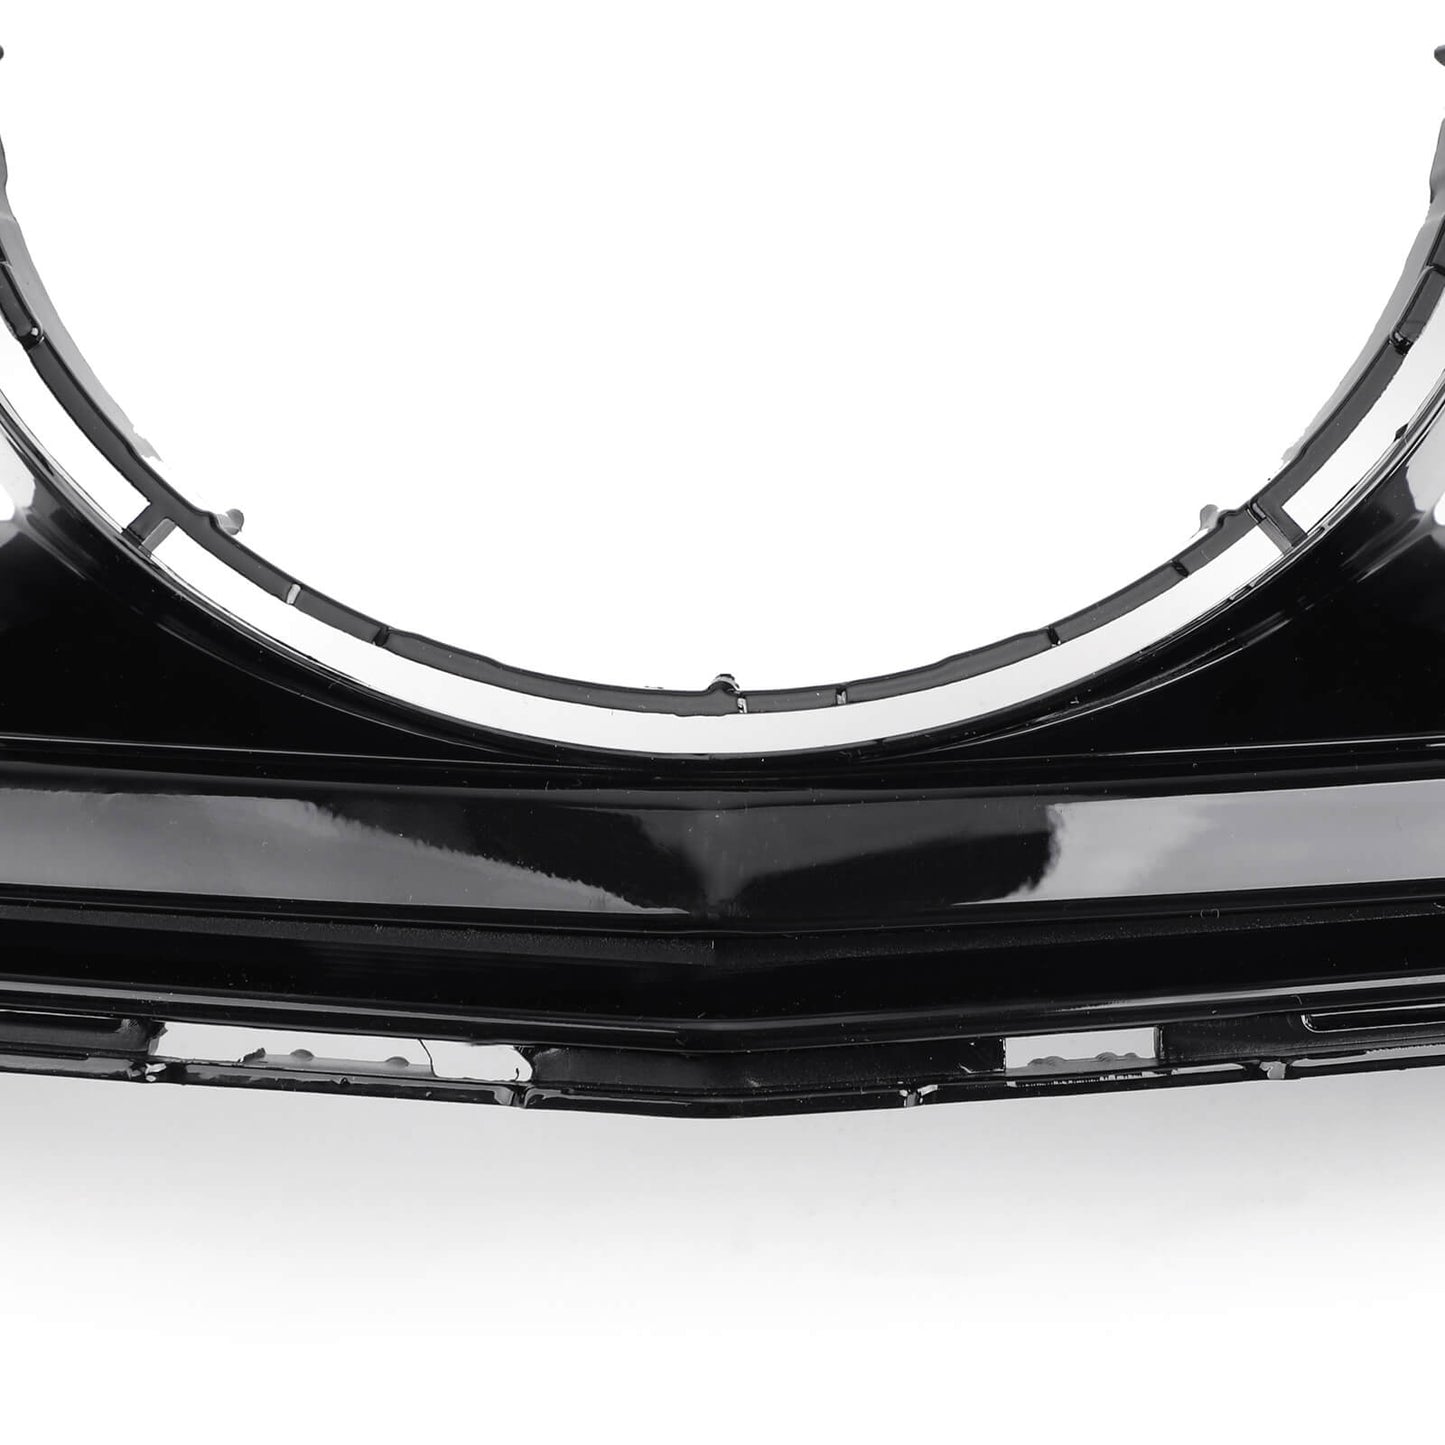 W204 2008-2014 Benz griglia di ricambio griglia superiore anteriore nera generico